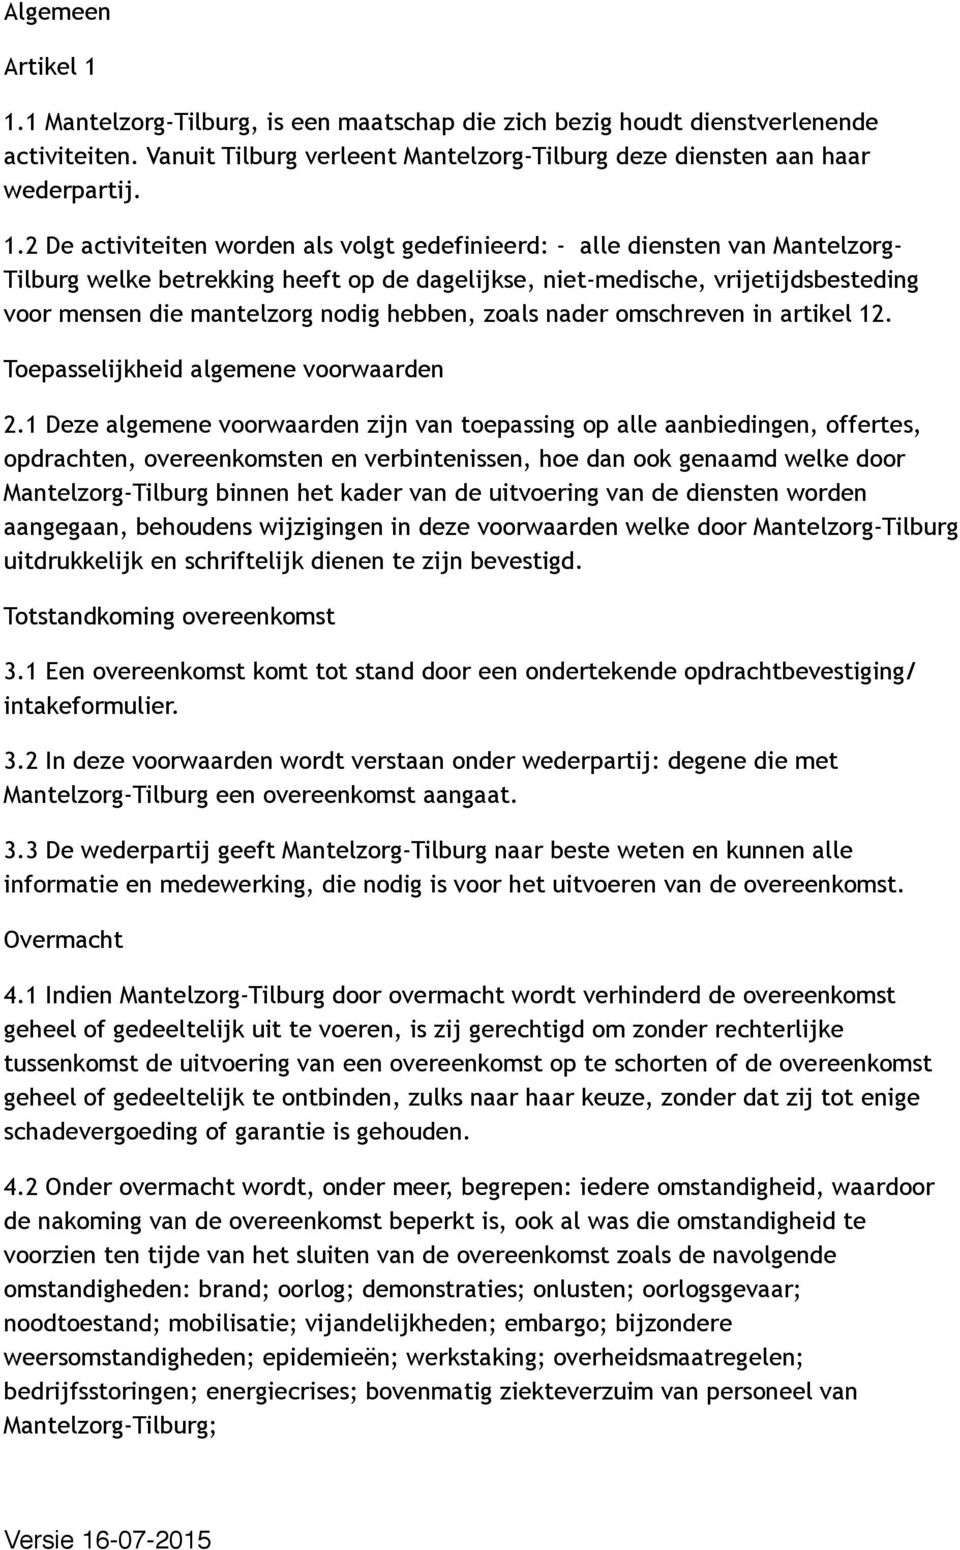 2 De activiteiten worden als volgt gedefinieerd: - alle diensten van Mantelzorg- Tilburg welke betrekking heeft op de dagelijkse, niet-medische, vrijetijdsbesteding voor mensen die mantelzorg nodig